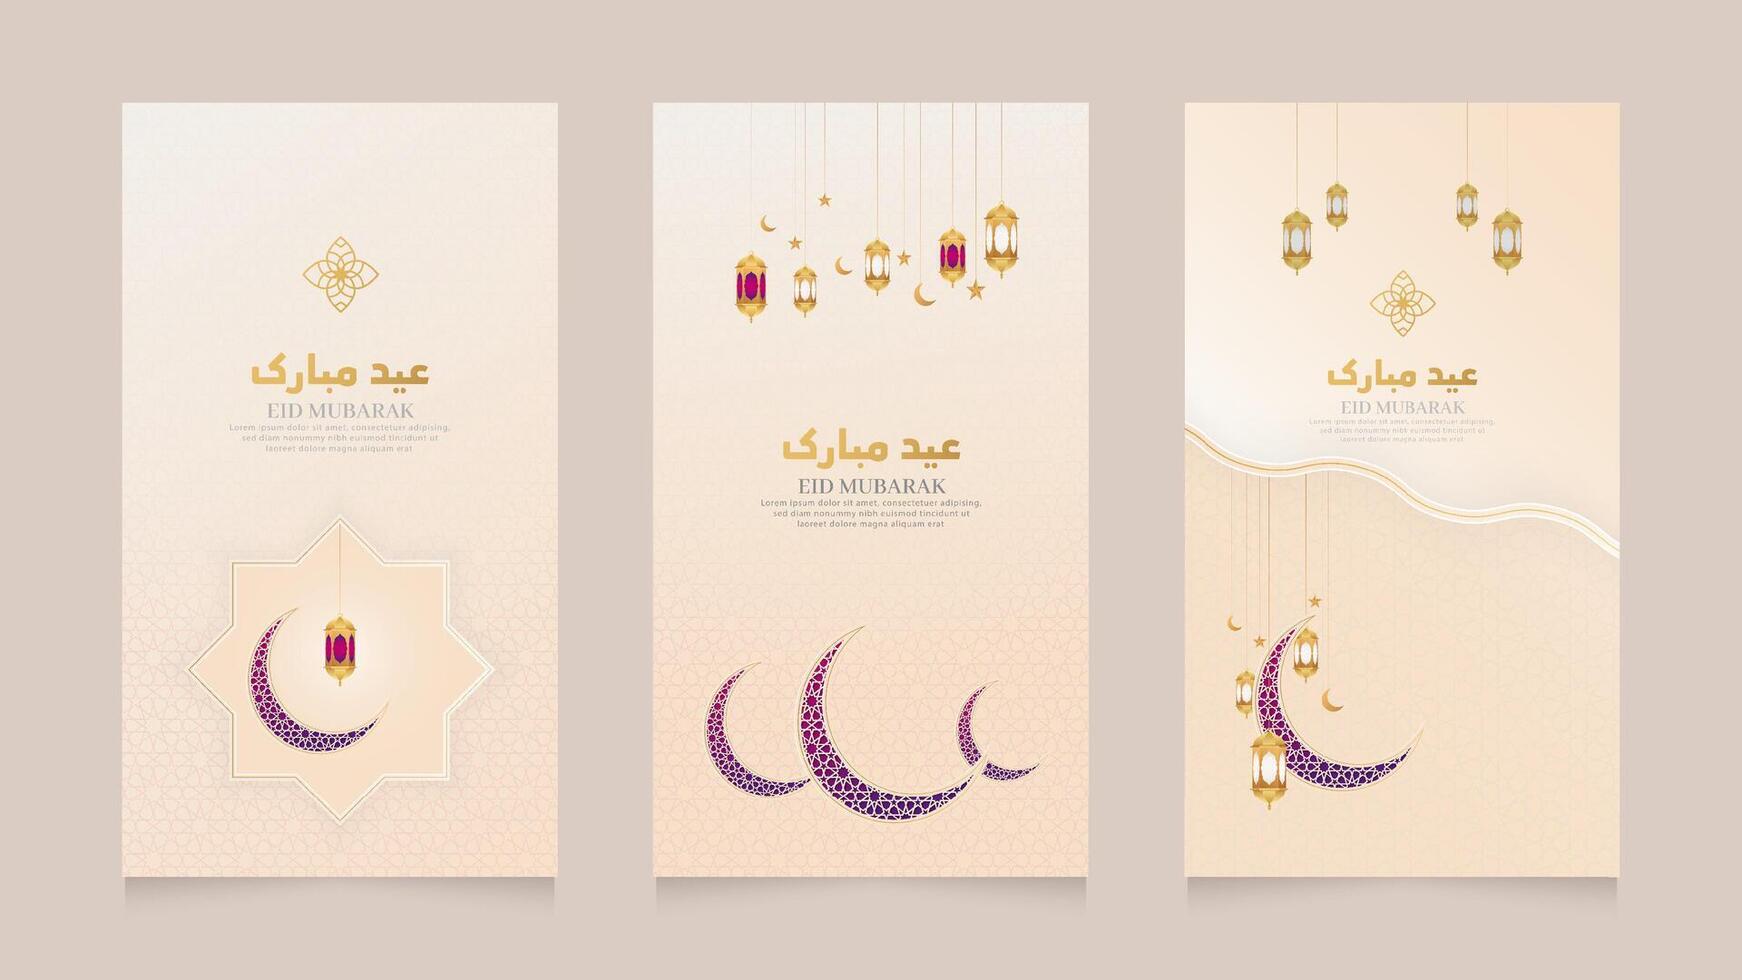 Islamitisch Arabisch realistisch sociaal media verhalen verzameling sjabloon met halve maan maan voor Ramadan kareem en eid mubarak vector